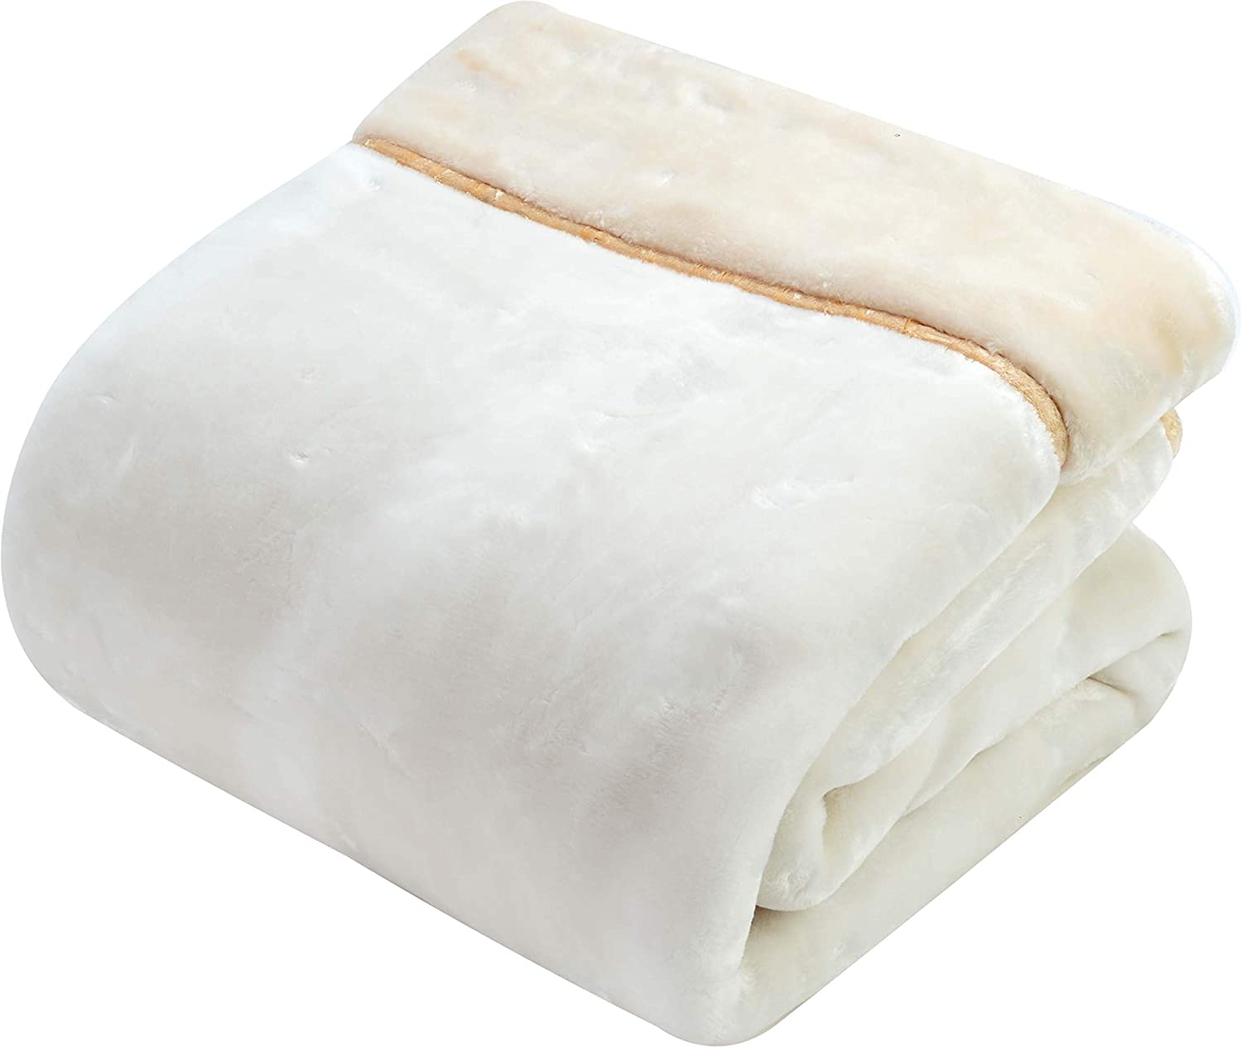 毛布おすすめ商品：西川(Nishikawa) ハイボリューム2枚合わせ毛布 2CH3322